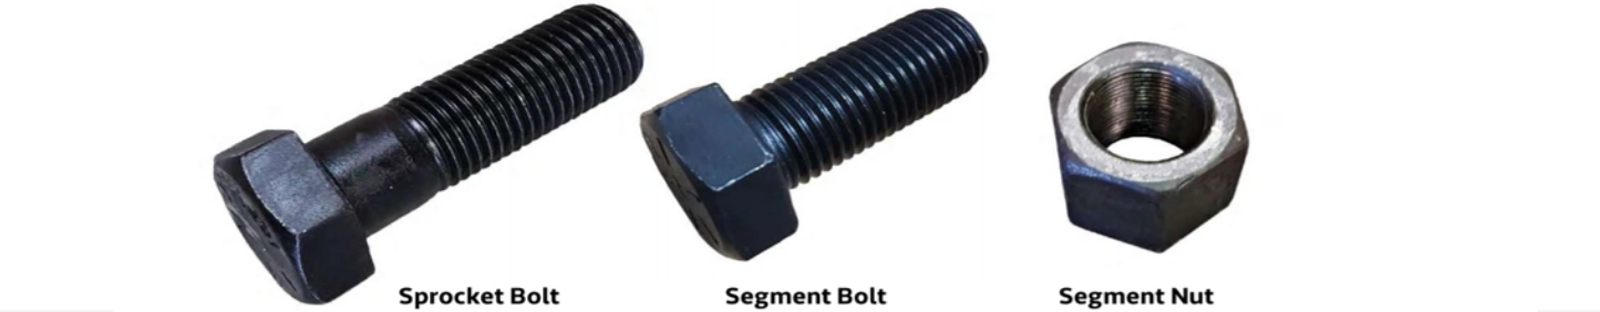 segment bolt